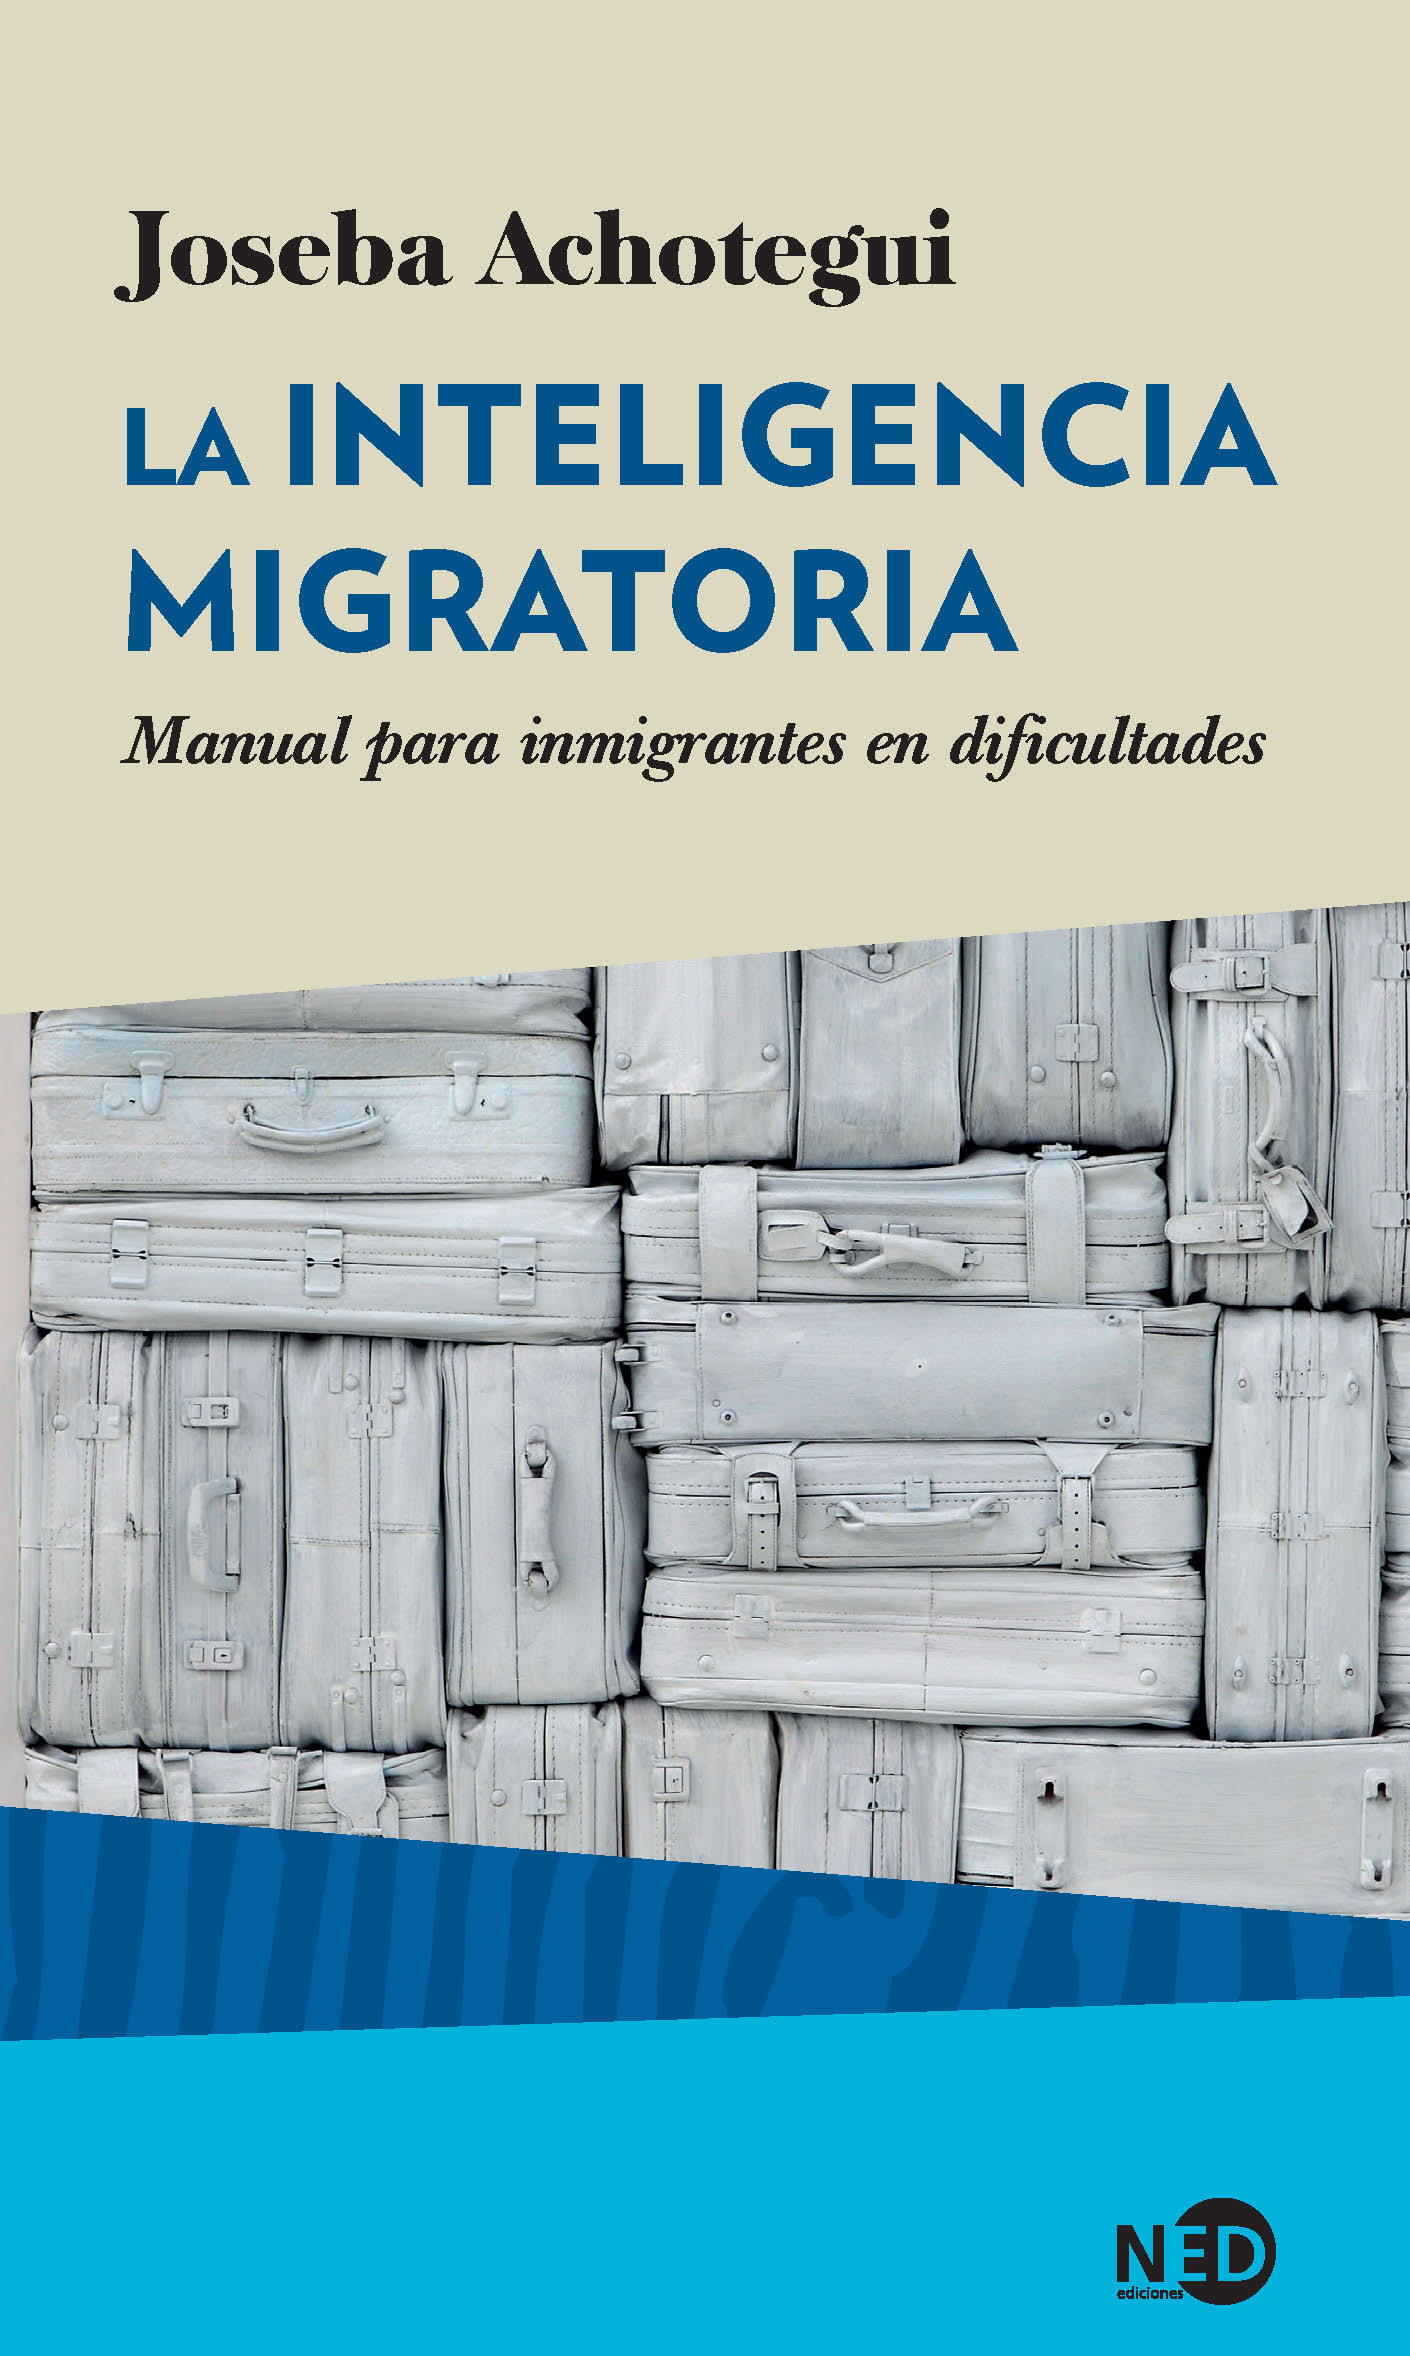 Imagen La inteligencia migratoria/ Joseba Achotegui 1